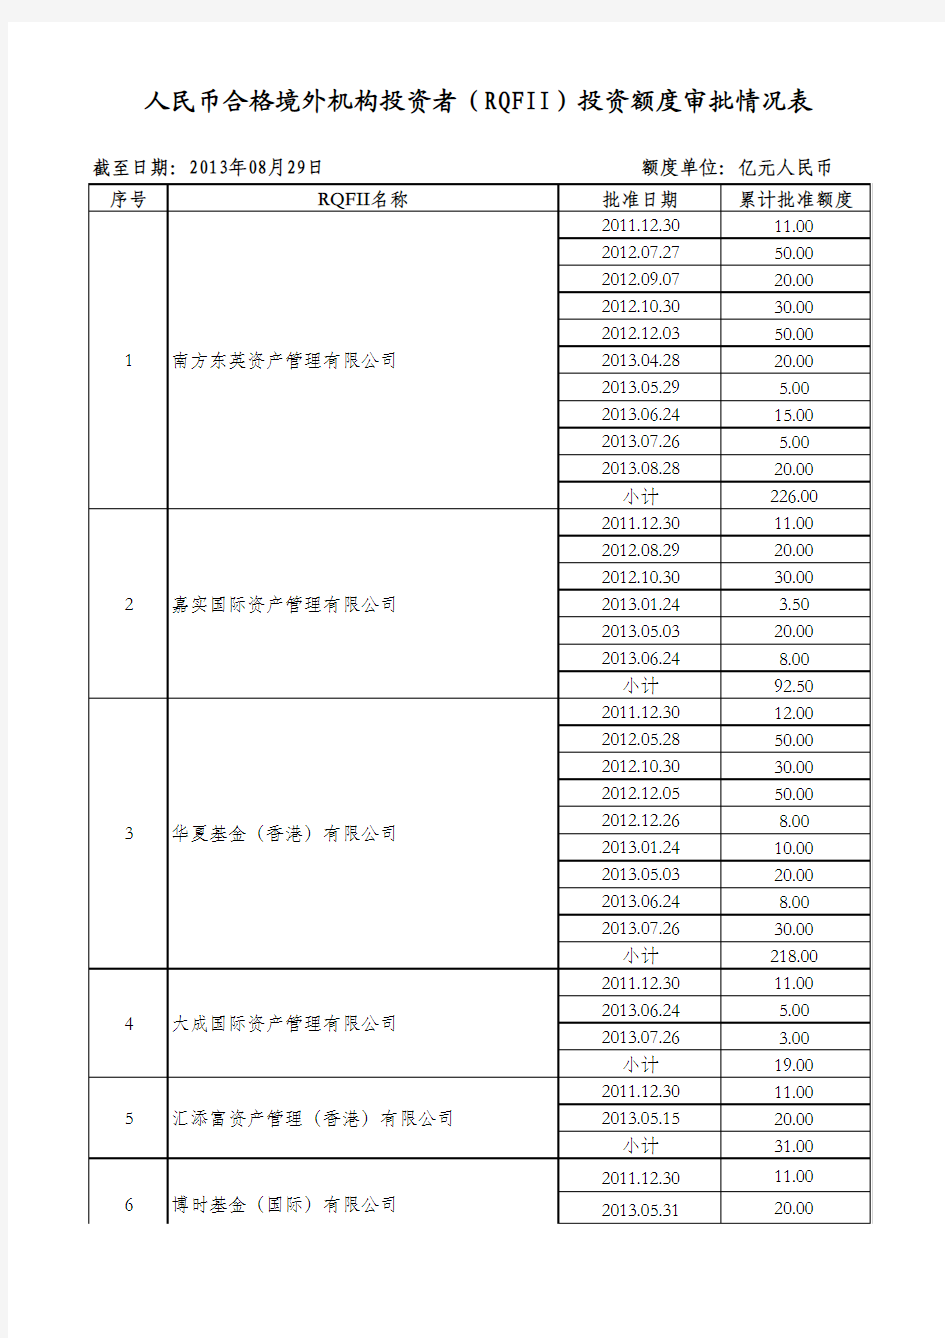 人民币合格境外机构投资者(RQFII)投资额度审批情况表(截至2013年8月29日)